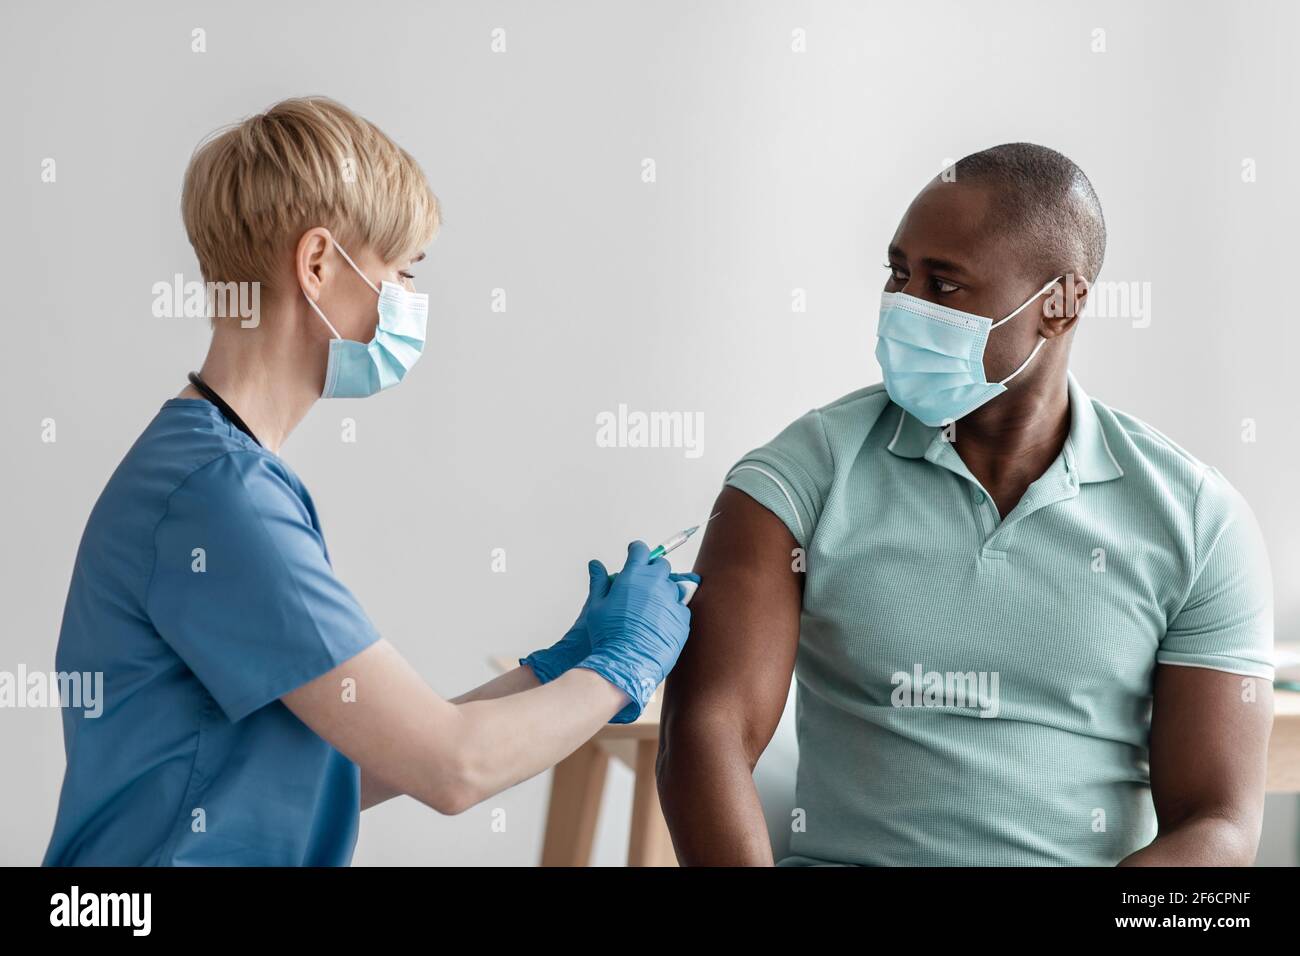 Vaccinazione, immunizzazione, prevenzione delle malattie, uomo in maschera medica che riceve Covid-19 o vaccino influenzale Foto Stock